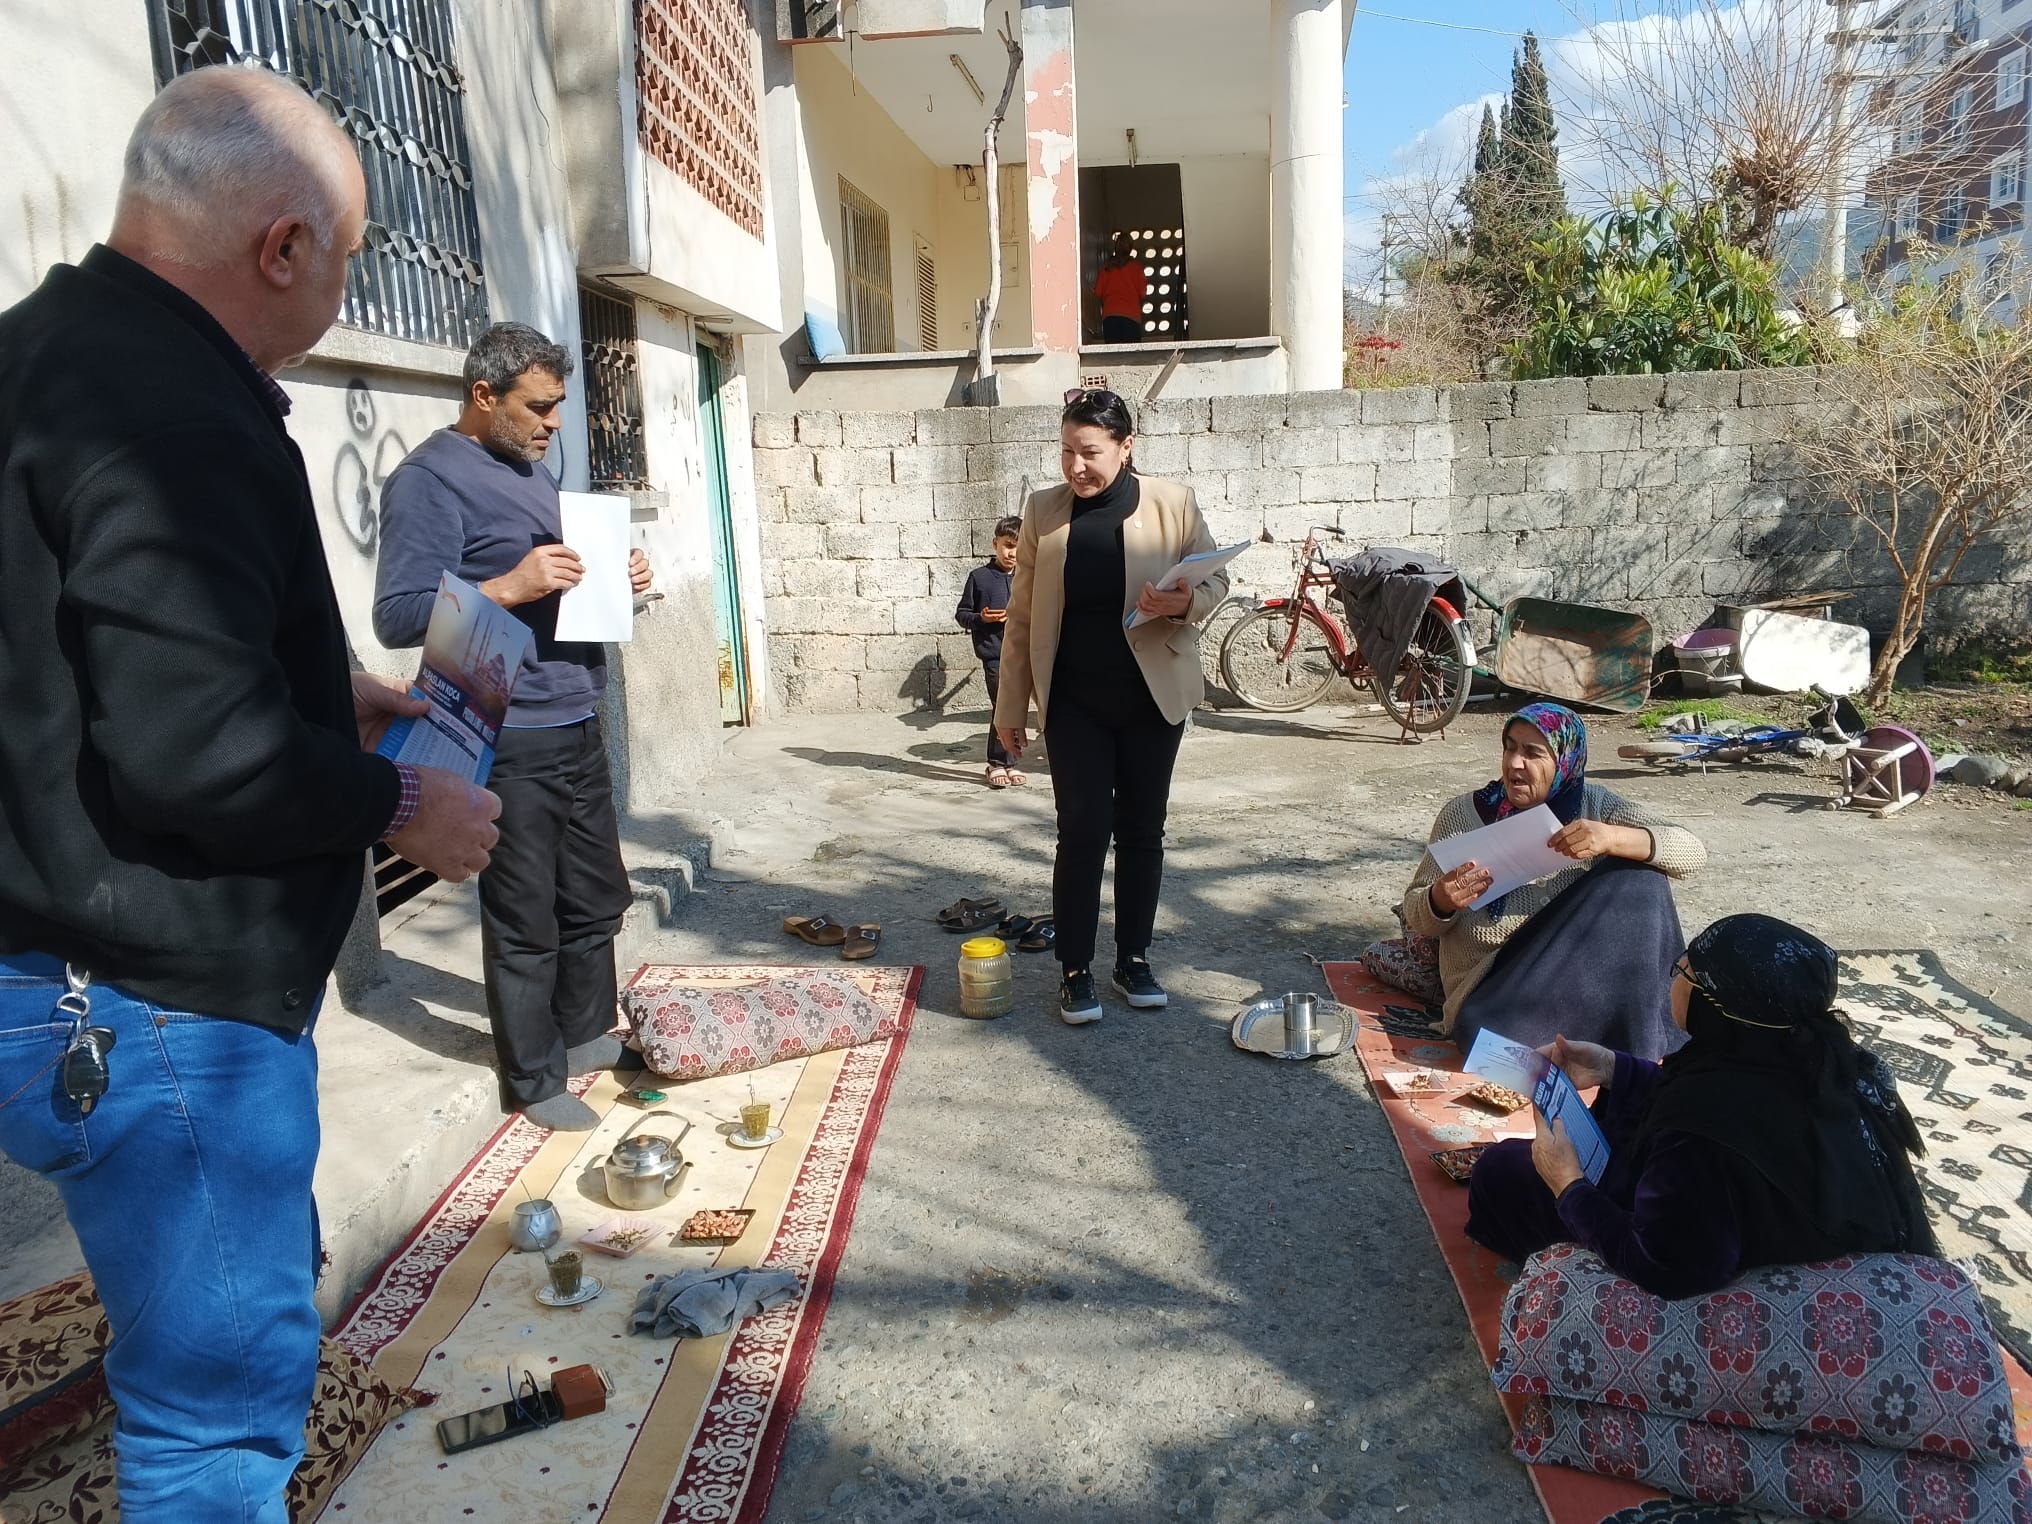 İyi Parti Adayı Sibel Baysal, Mahalle Mahalle Gezerek Halkın Gönlünde Taht Kuruyor (9)